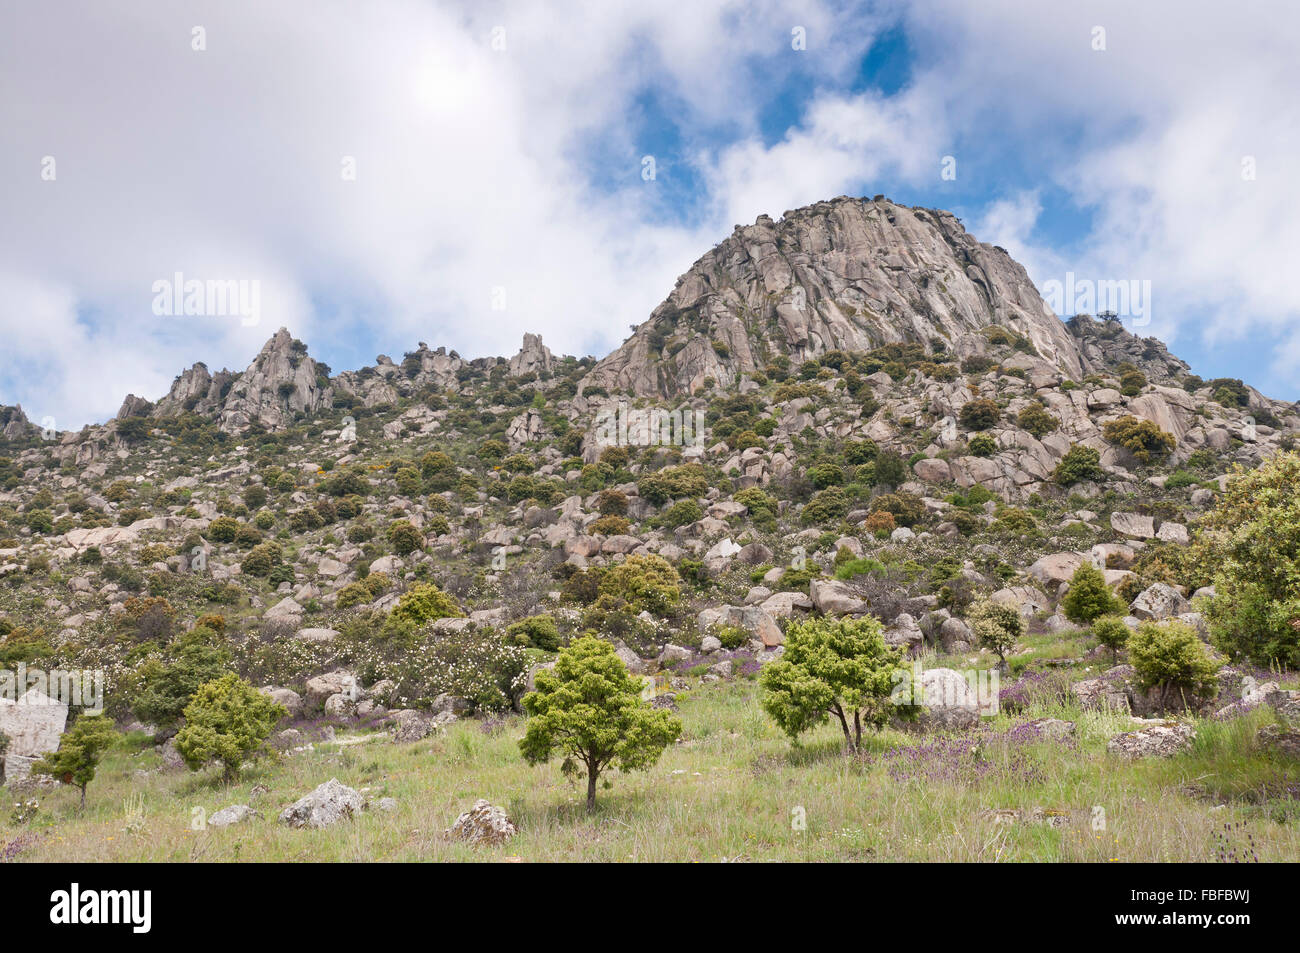 Views of Pico de la Miel (Honey Peak). It is a granite batholith located at  Sierra de la Cabrera, Madrid, Spain Stock Photo